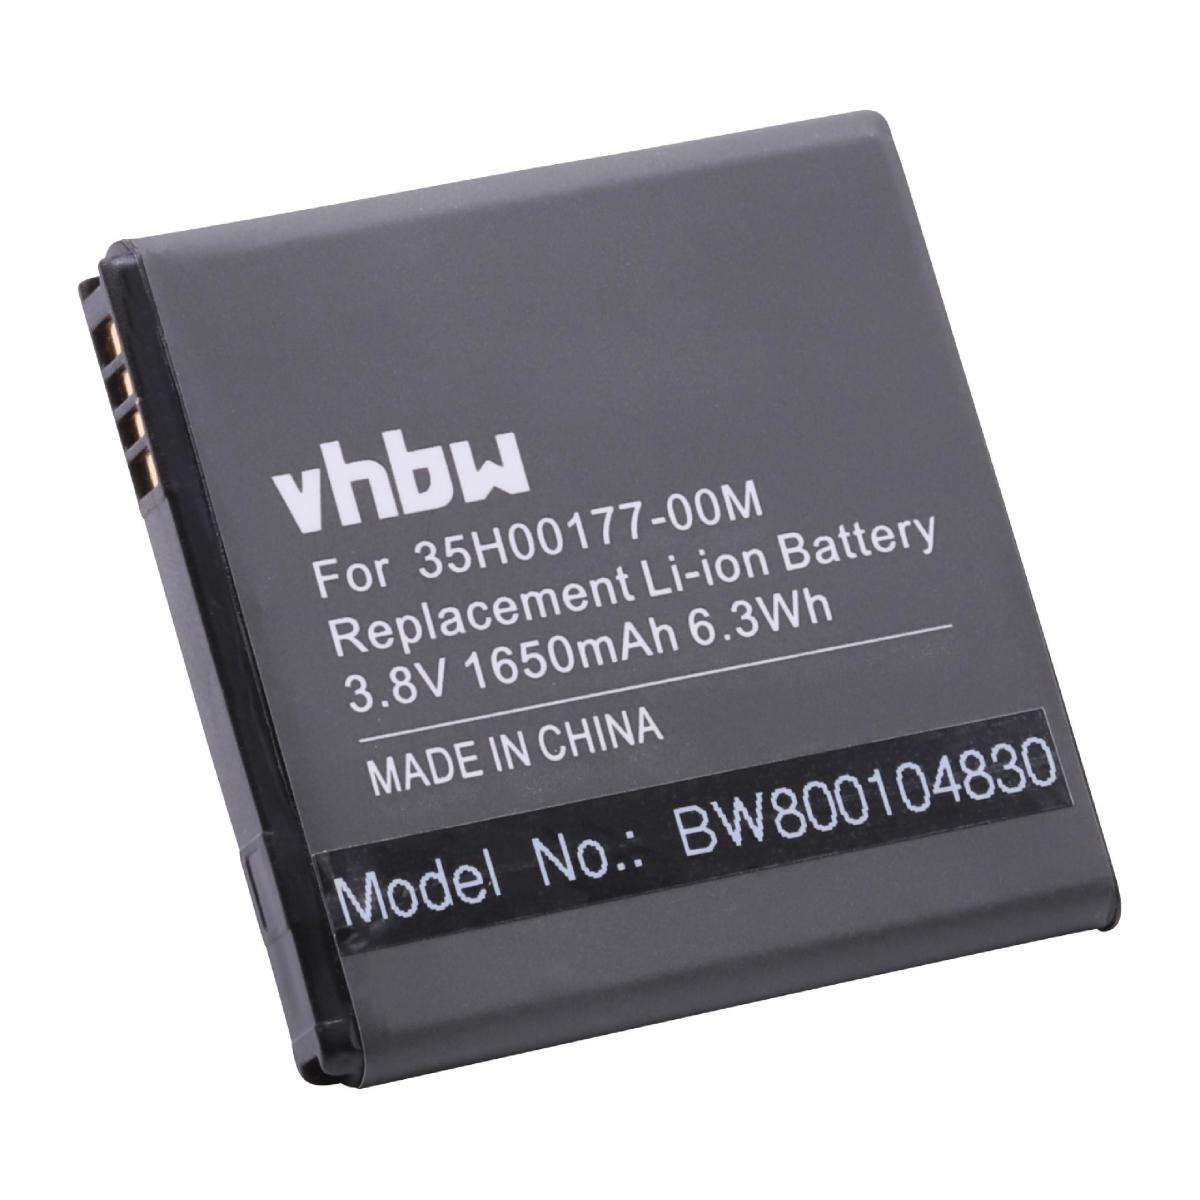 Vhbw - vhbw Batterie remplacement pour BL11100, BA-S800 pour smartphone (1600mAh, 3,7V, Li-ion) - Batterie téléphone